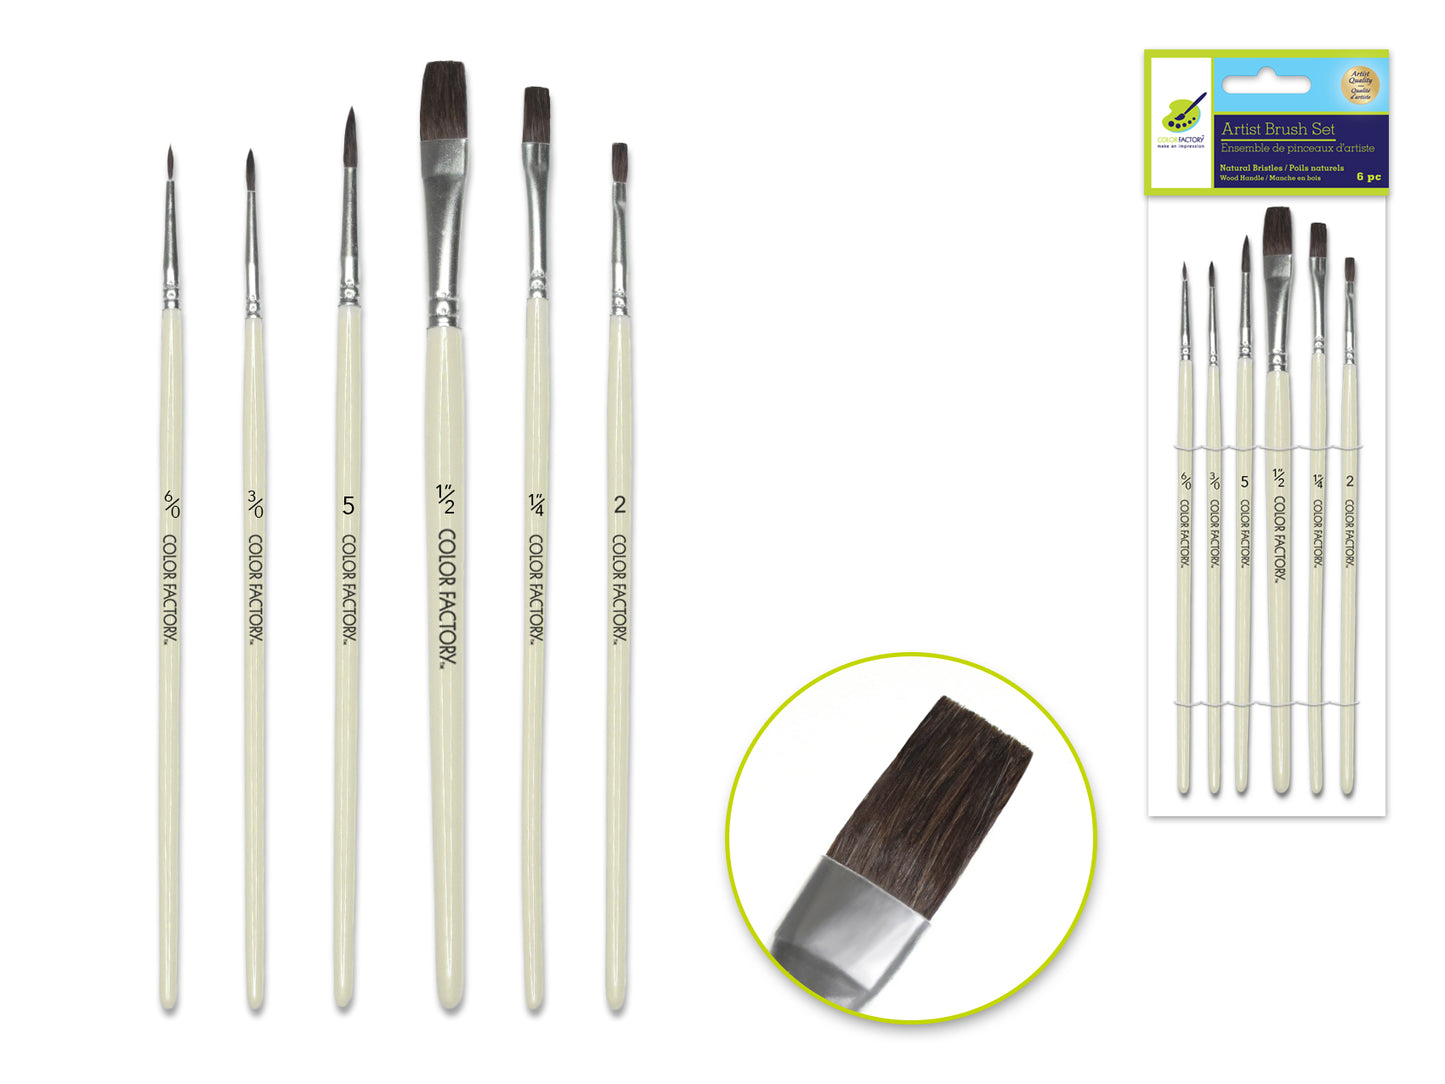 Artist Brush Set: Natural Bristle Multi-Pack x6 Watercolor Wood Handle